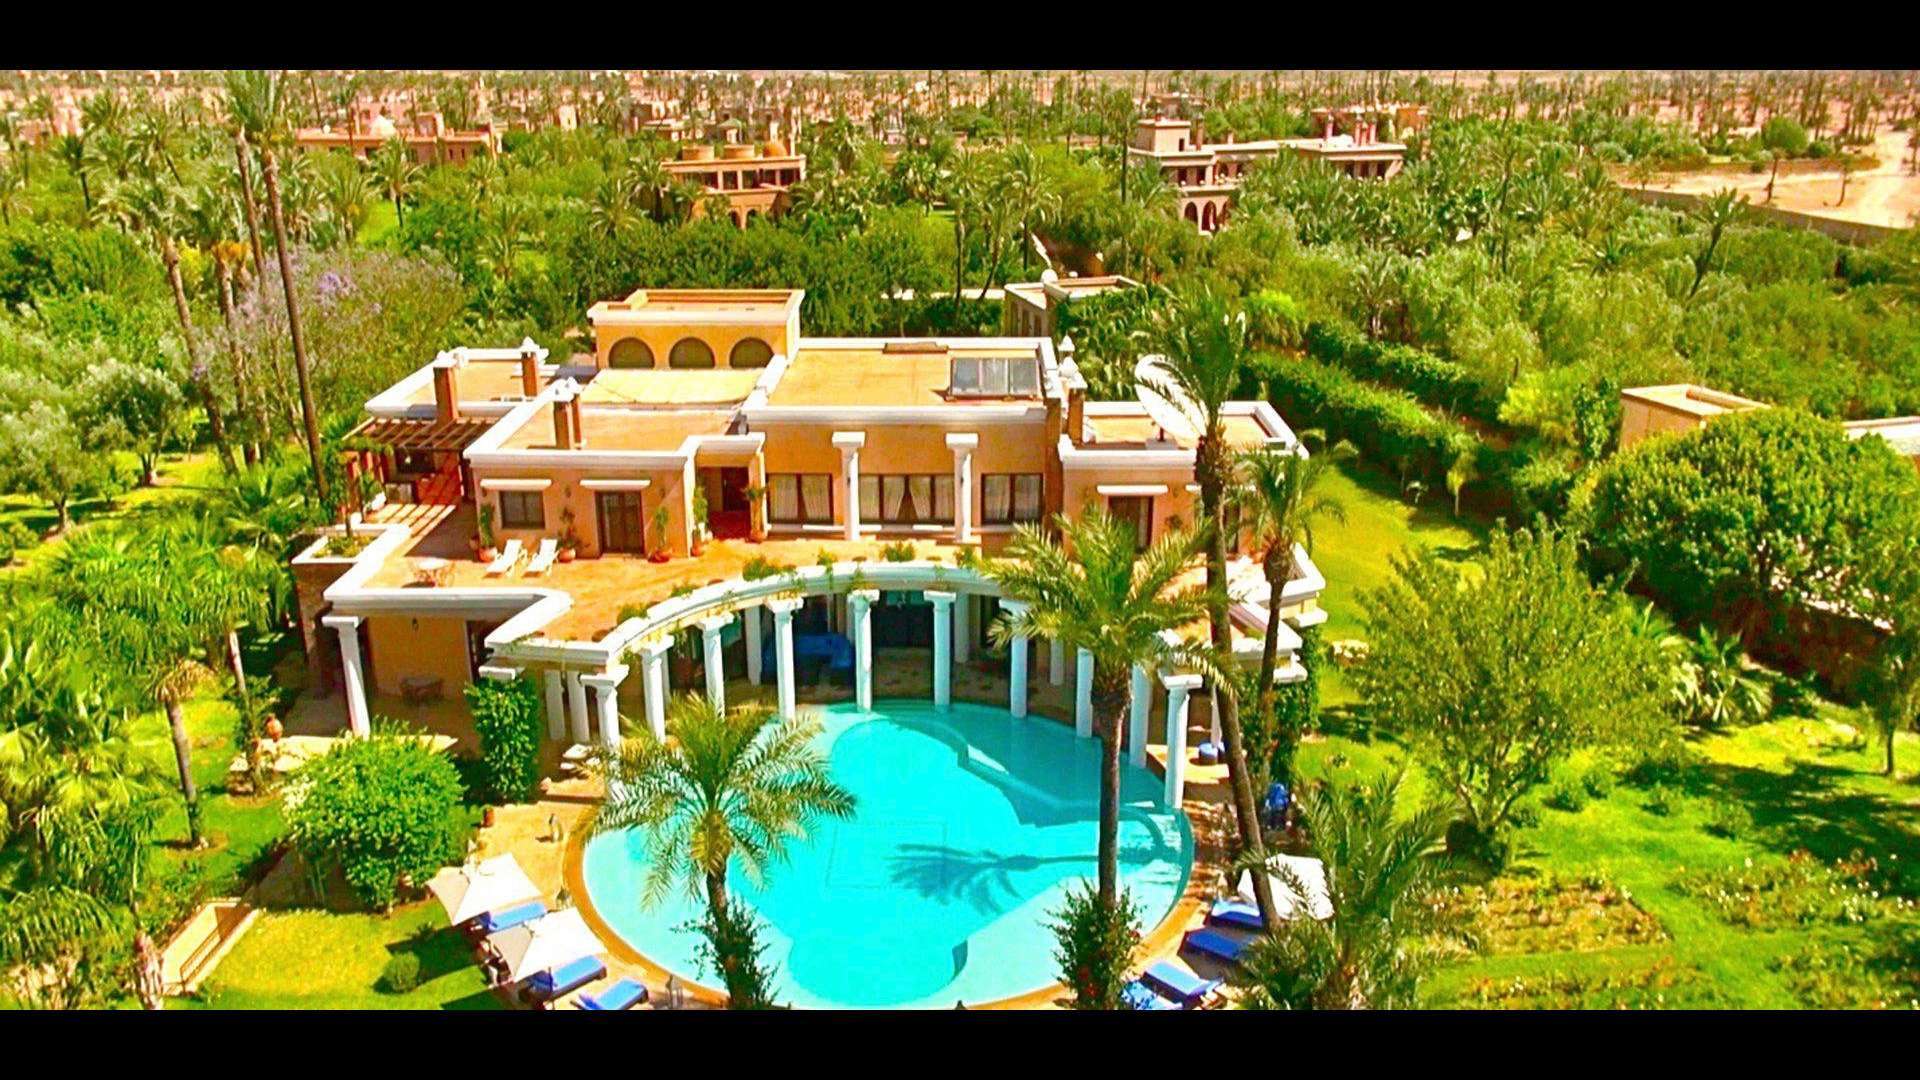 Location de vacances,Villa,Villa 5 suites de prestige avec spa privé et services hôteliers de haut niveau,Marrakech,Palmeraie